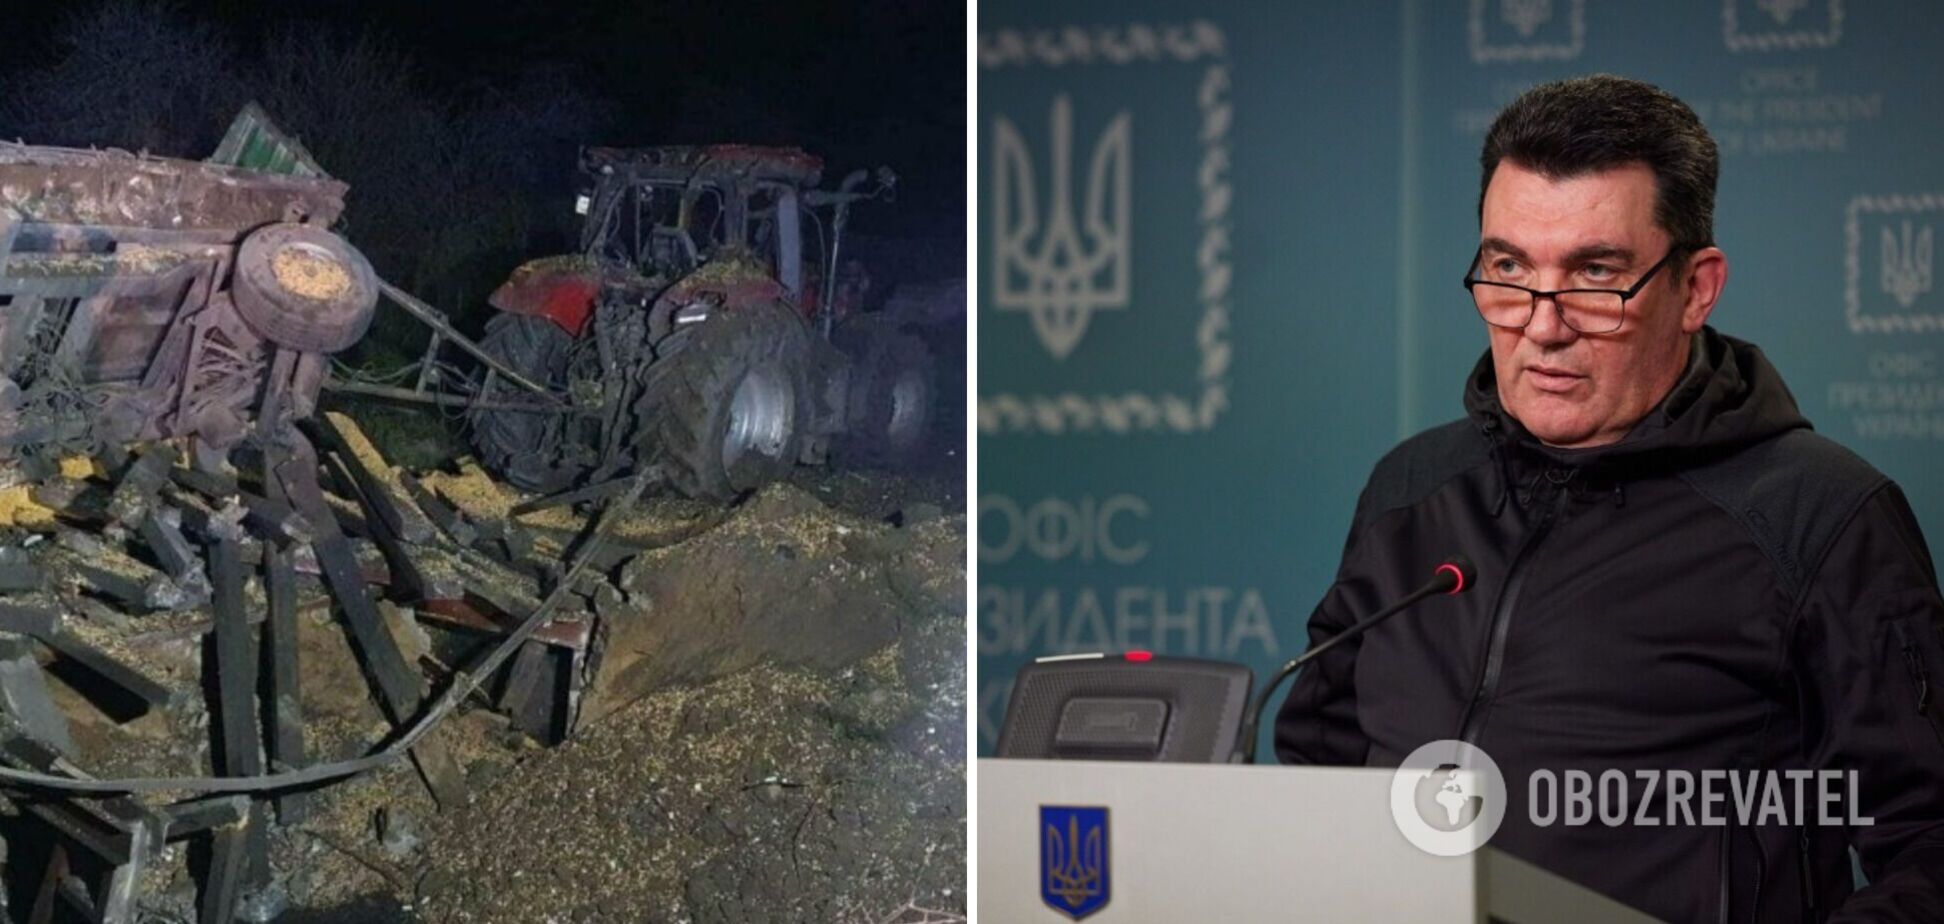  Данілов заявив, що Україна виступає за спільне розслідування падіння ракети в Польщі: очікуємо від партнерів інформацію